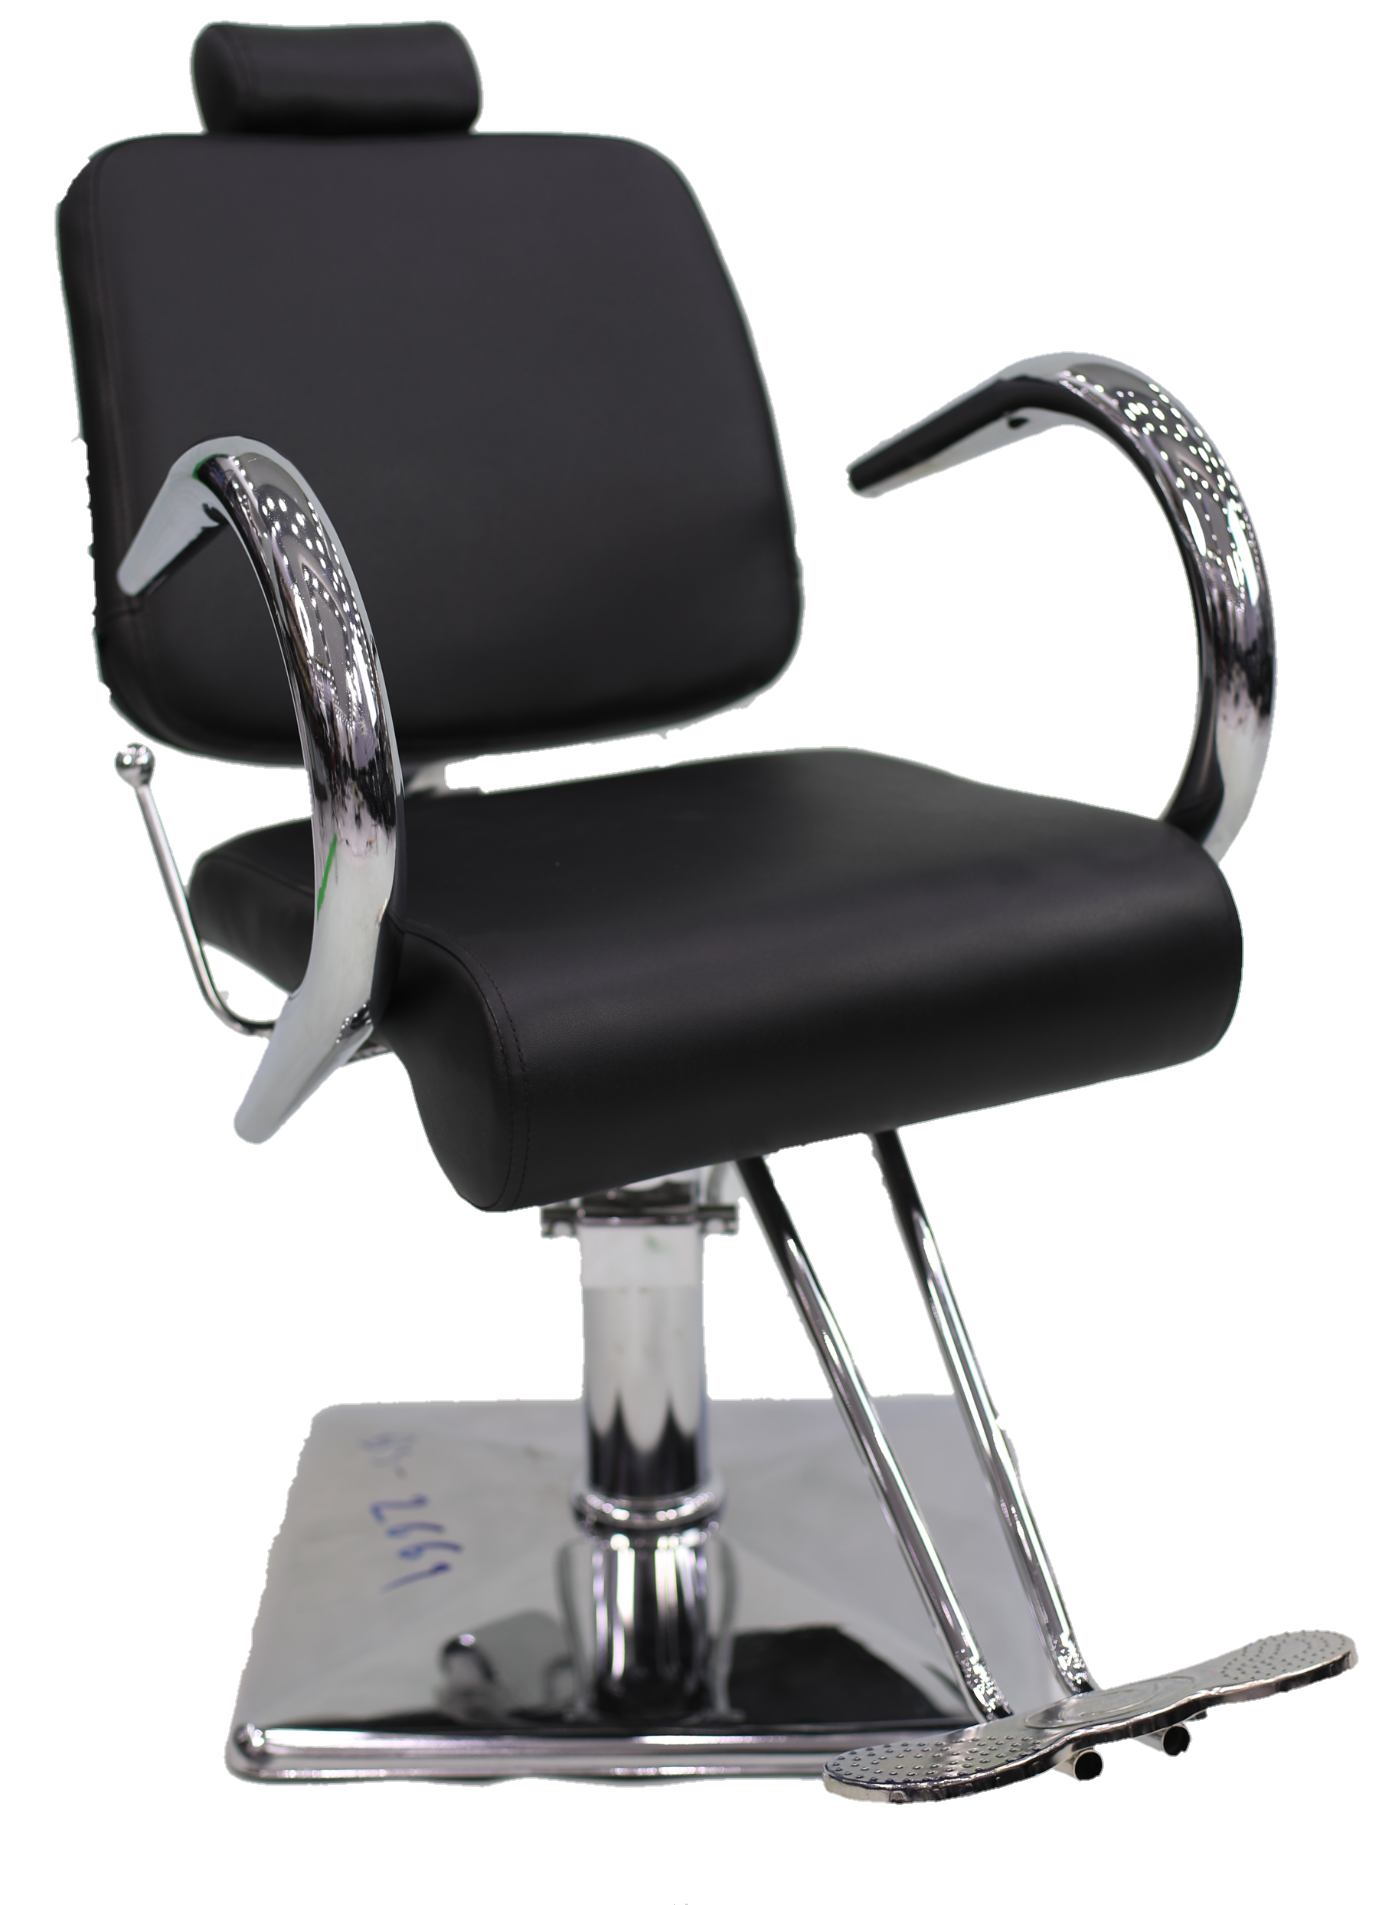 All Purpose Salon chair hairdressing chair BX-2669